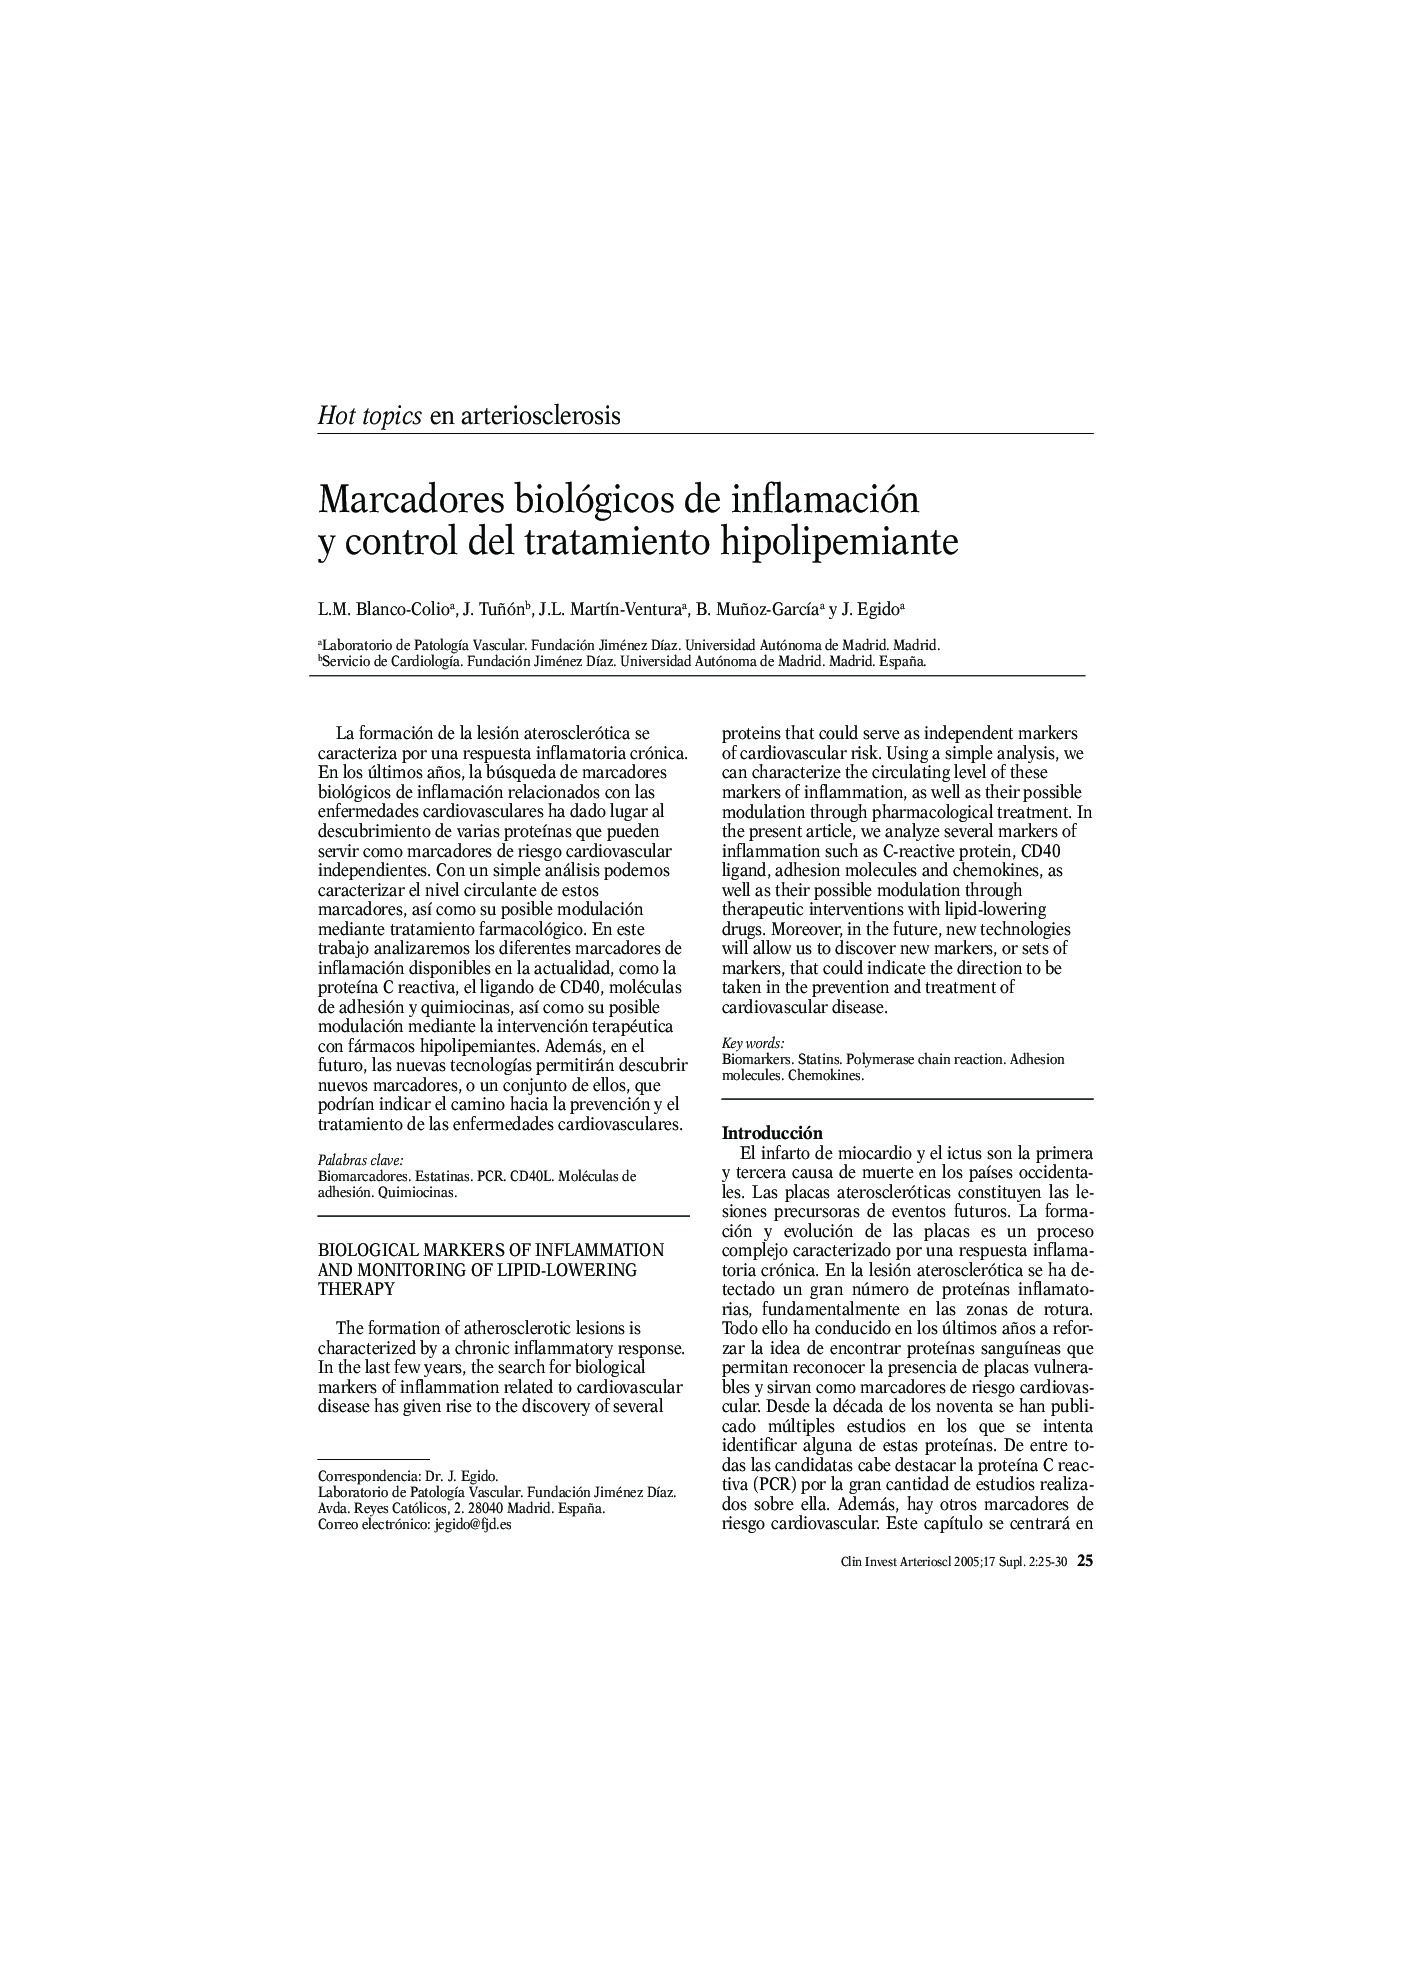 Marcadores biológicos de inflamación y control del tratamiento hipolipemiante